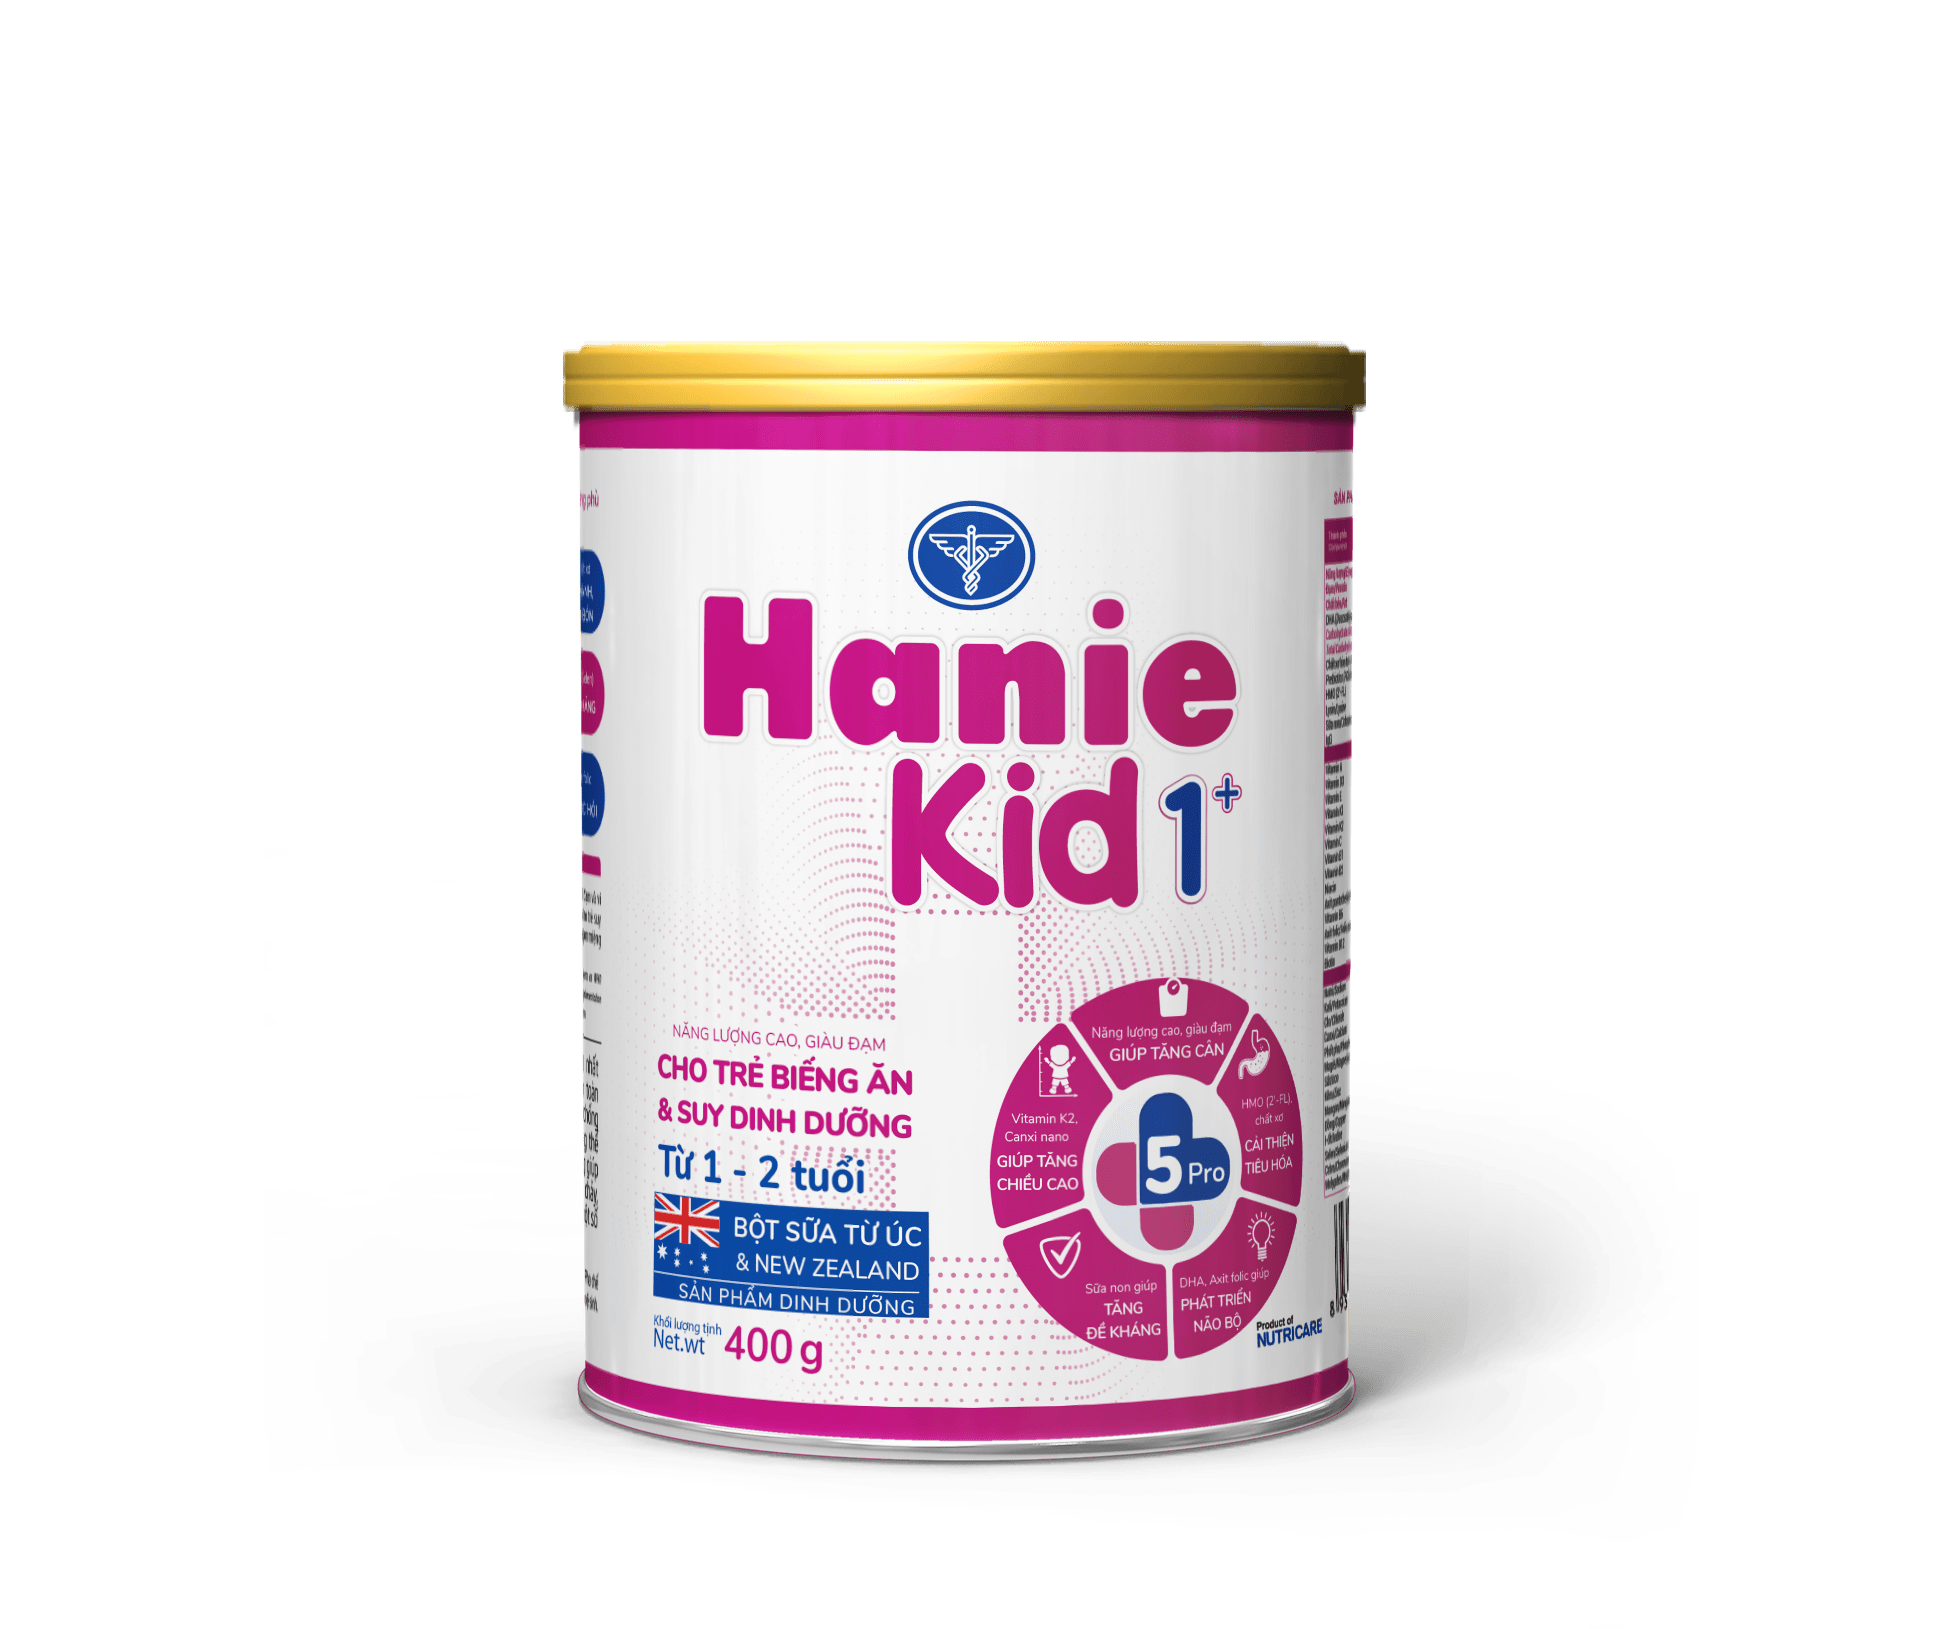 Hanie Kid là công thức sản phẩm dinh dưỡng đạt 100%; theo khuyến nghị của Tổ chức Y tế Thế giới dành cho trẻ nhẹ cân, thấp còi từ 0-10 tuổi.